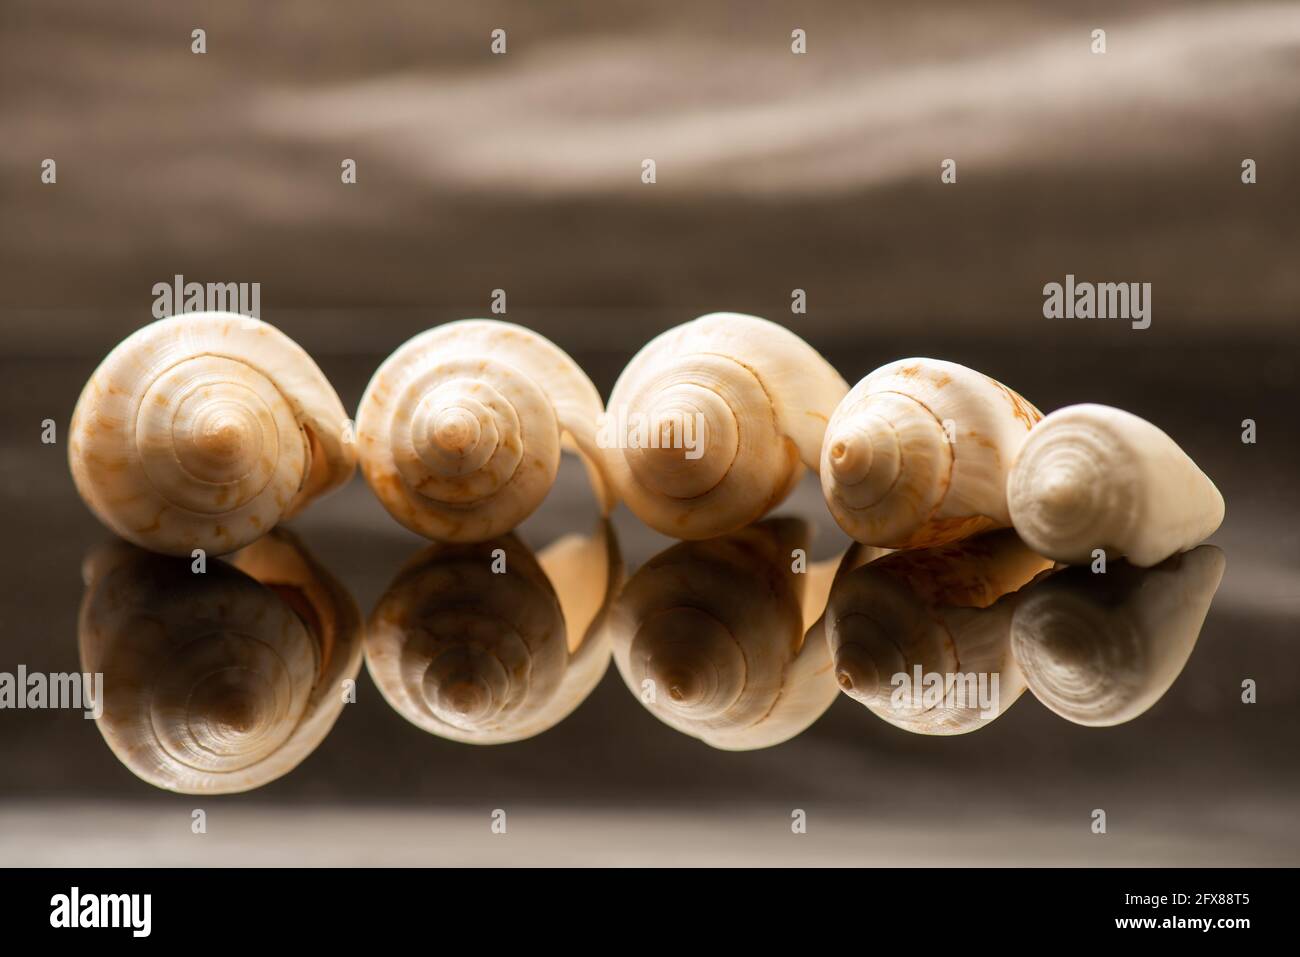 Cinco conchas alineadas sobre una superficie reflectante Foto de stock